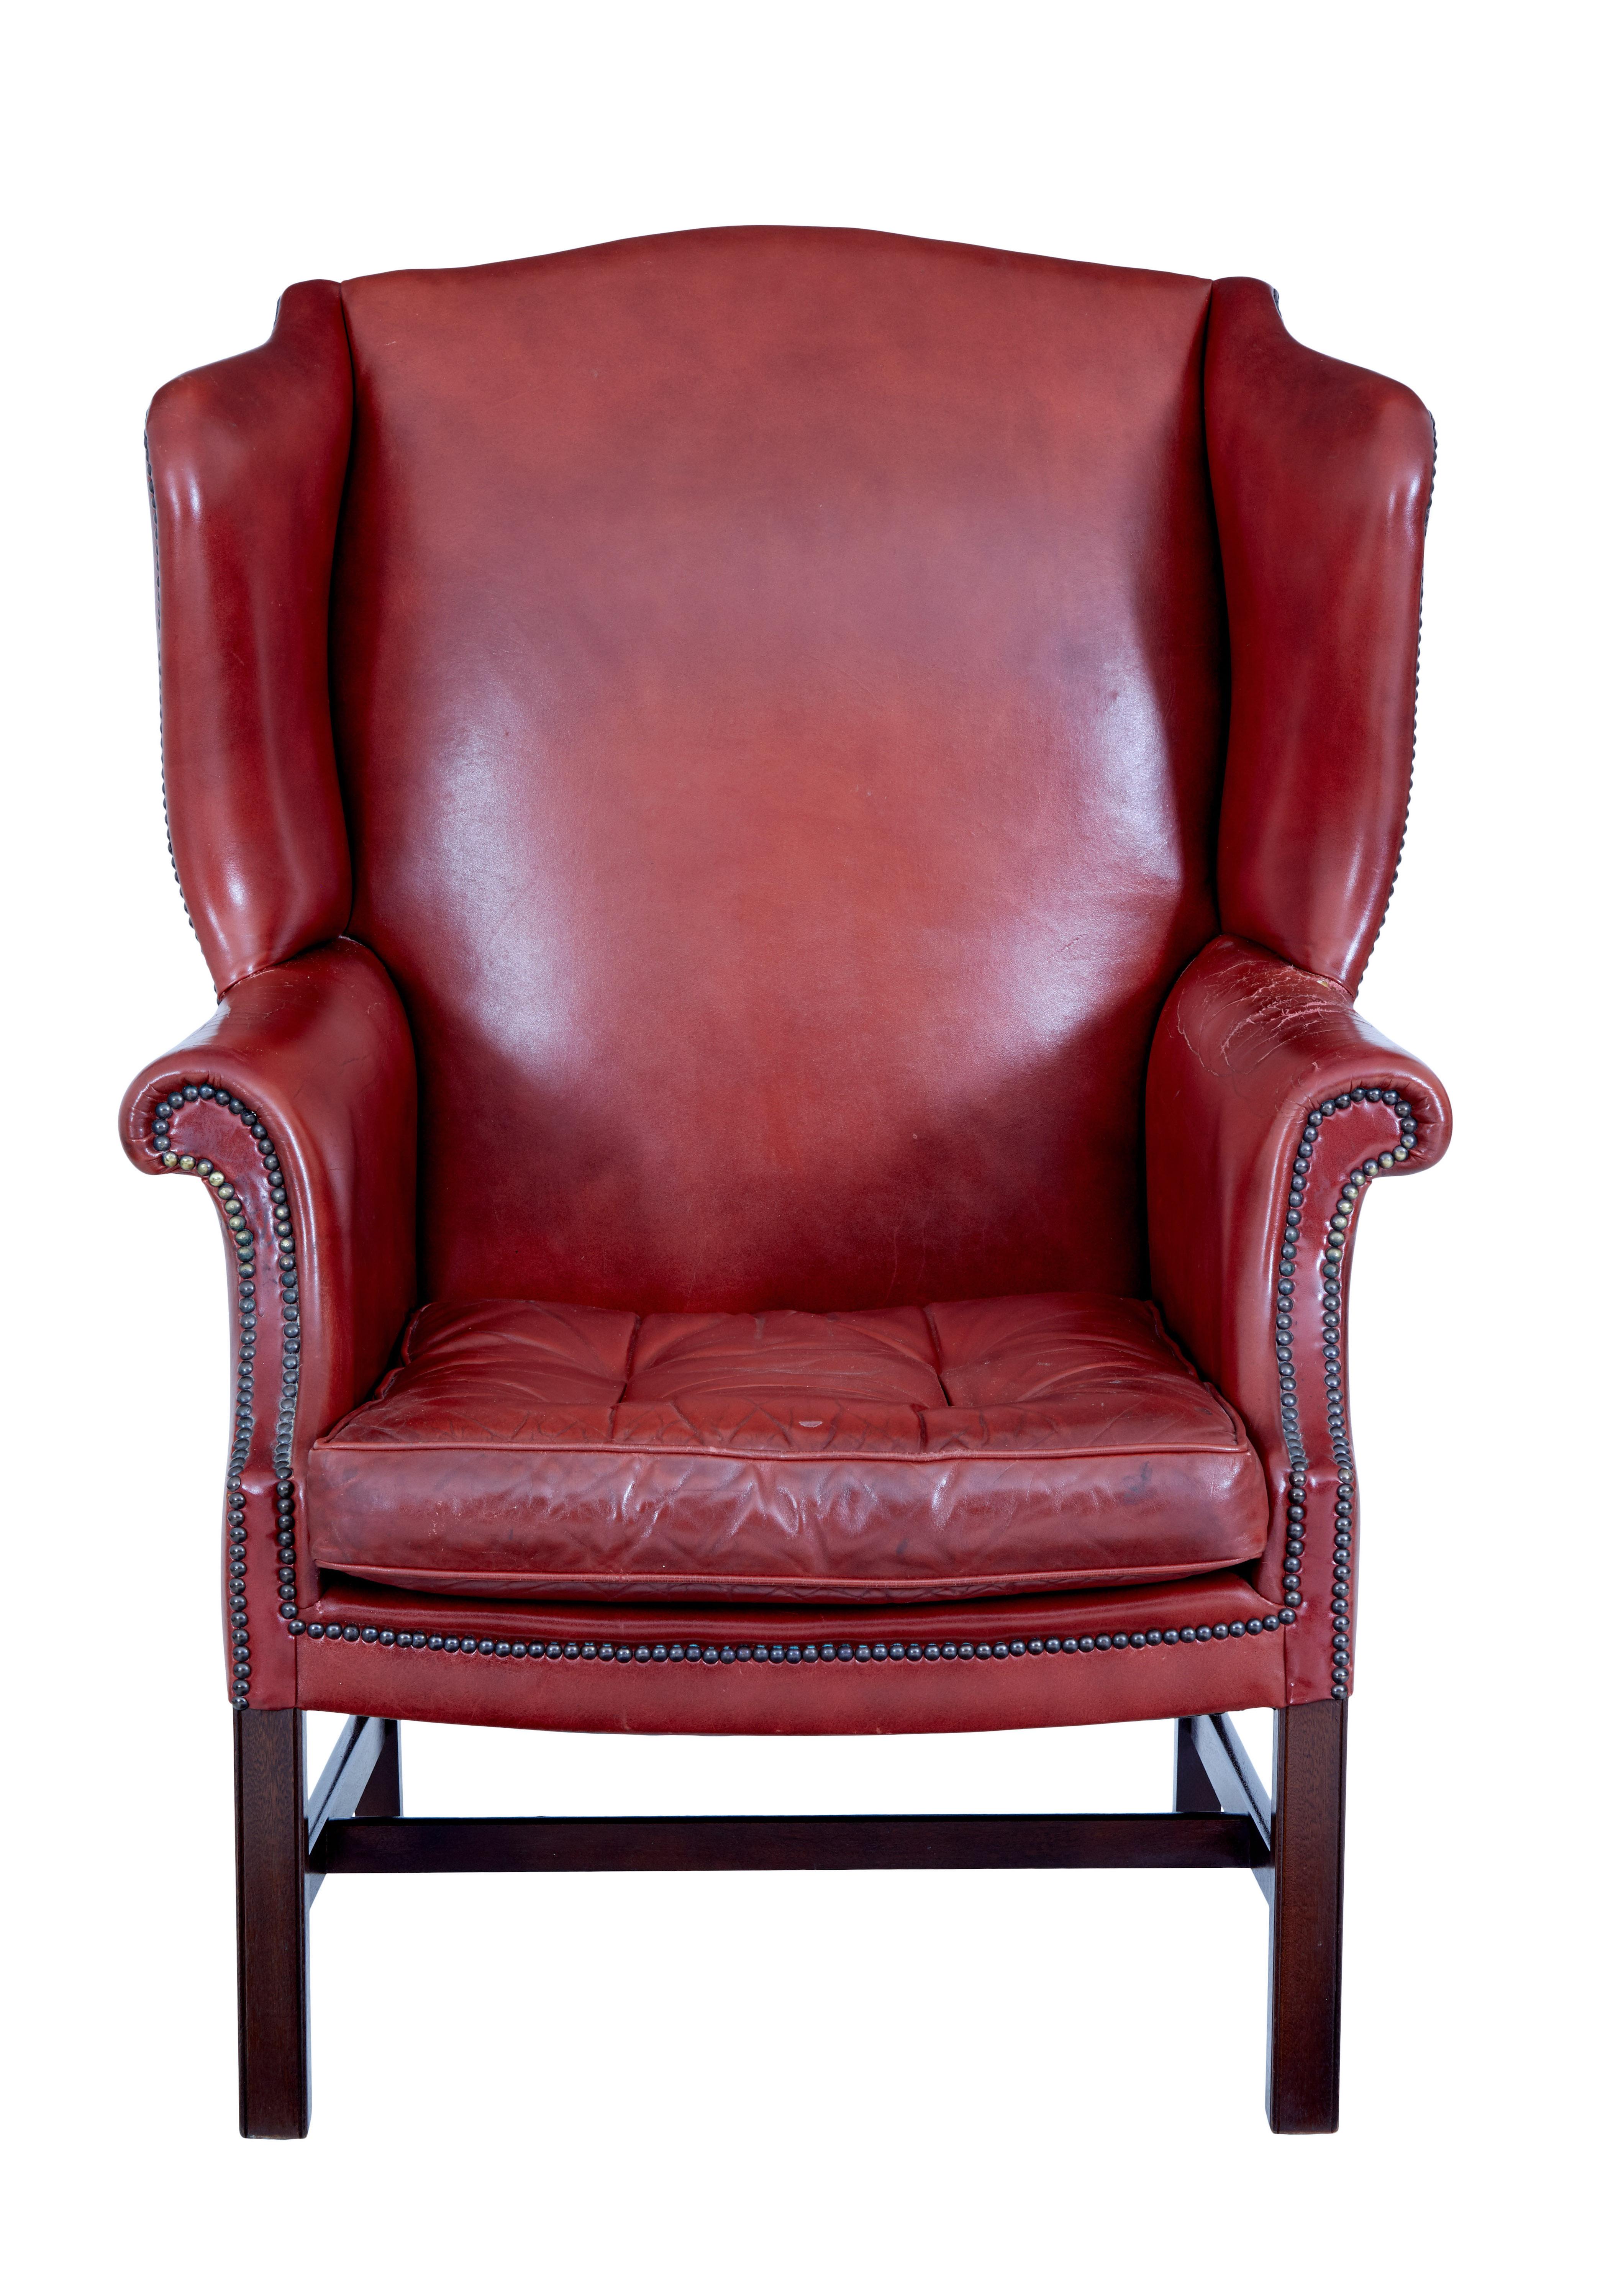 Fauteuil à oreilles en cuir du milieu du 20e siècle, vers 1950.

De belles proportions pour ce fauteuil en cuir.  Couleur rouge profond avec clous sur les bras, coussin d'assise amovible avec boutons et passepoils.

Sur un cadre en acajou.

Une